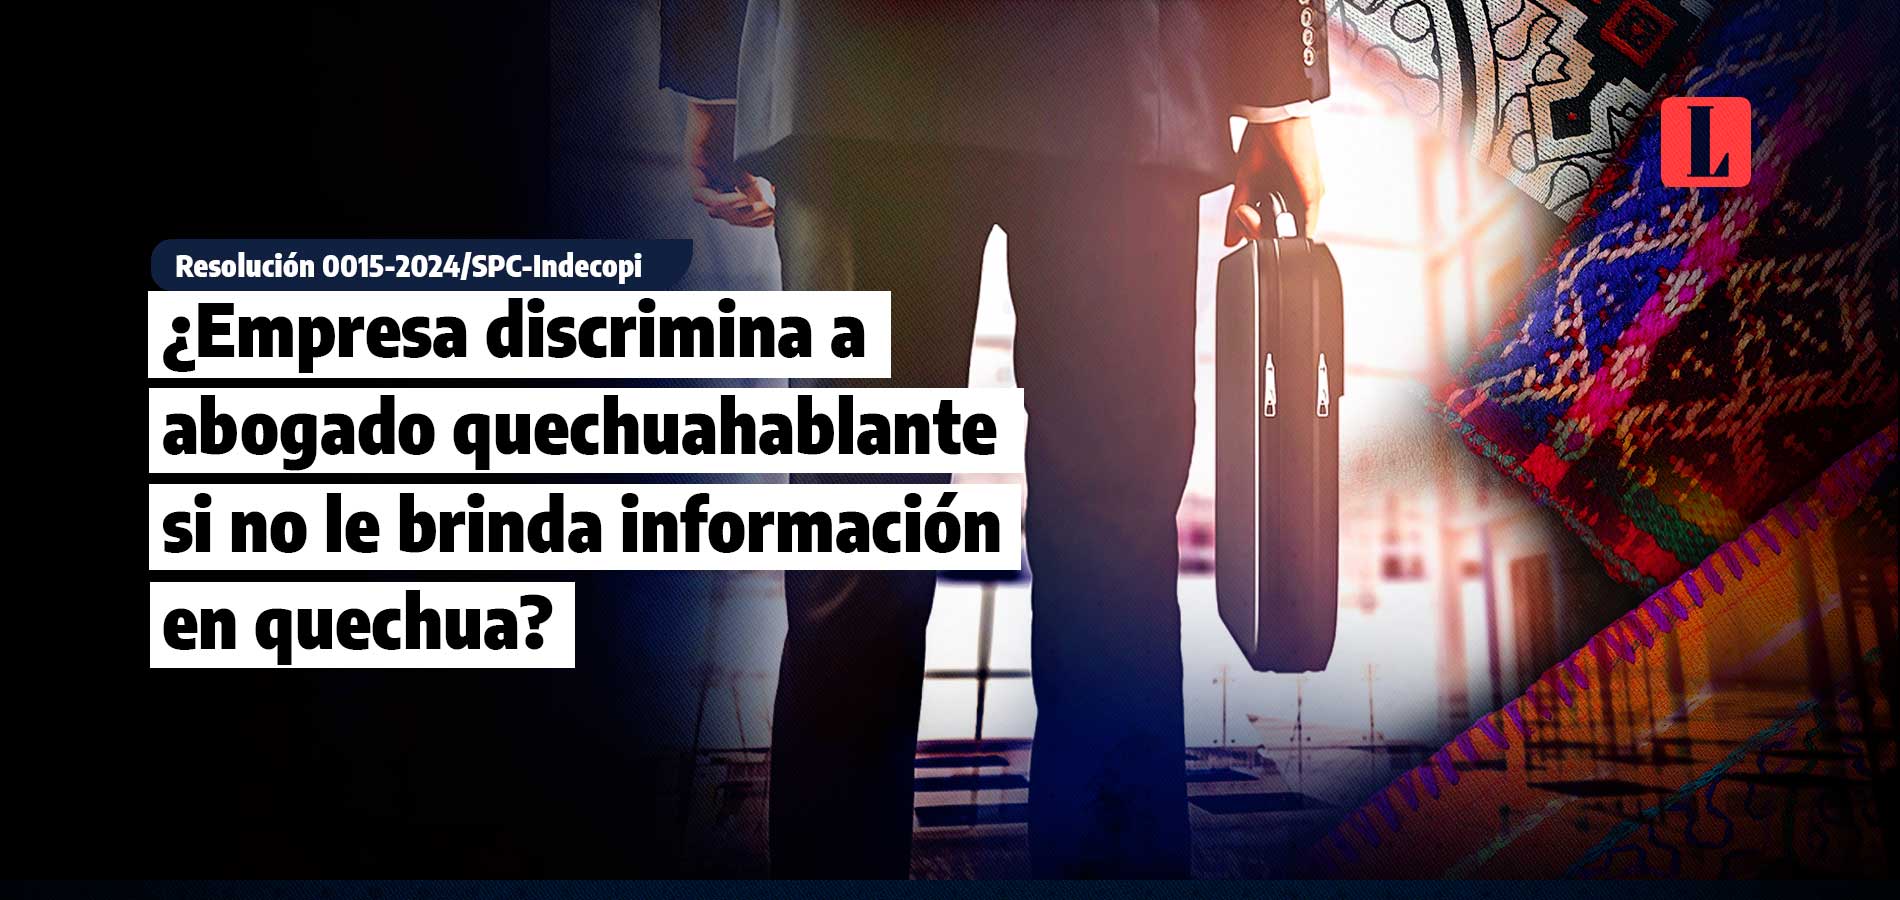 Empresa discrimina a abogado quechuahablante si no le brinda informacion en quechua laley.pe 1